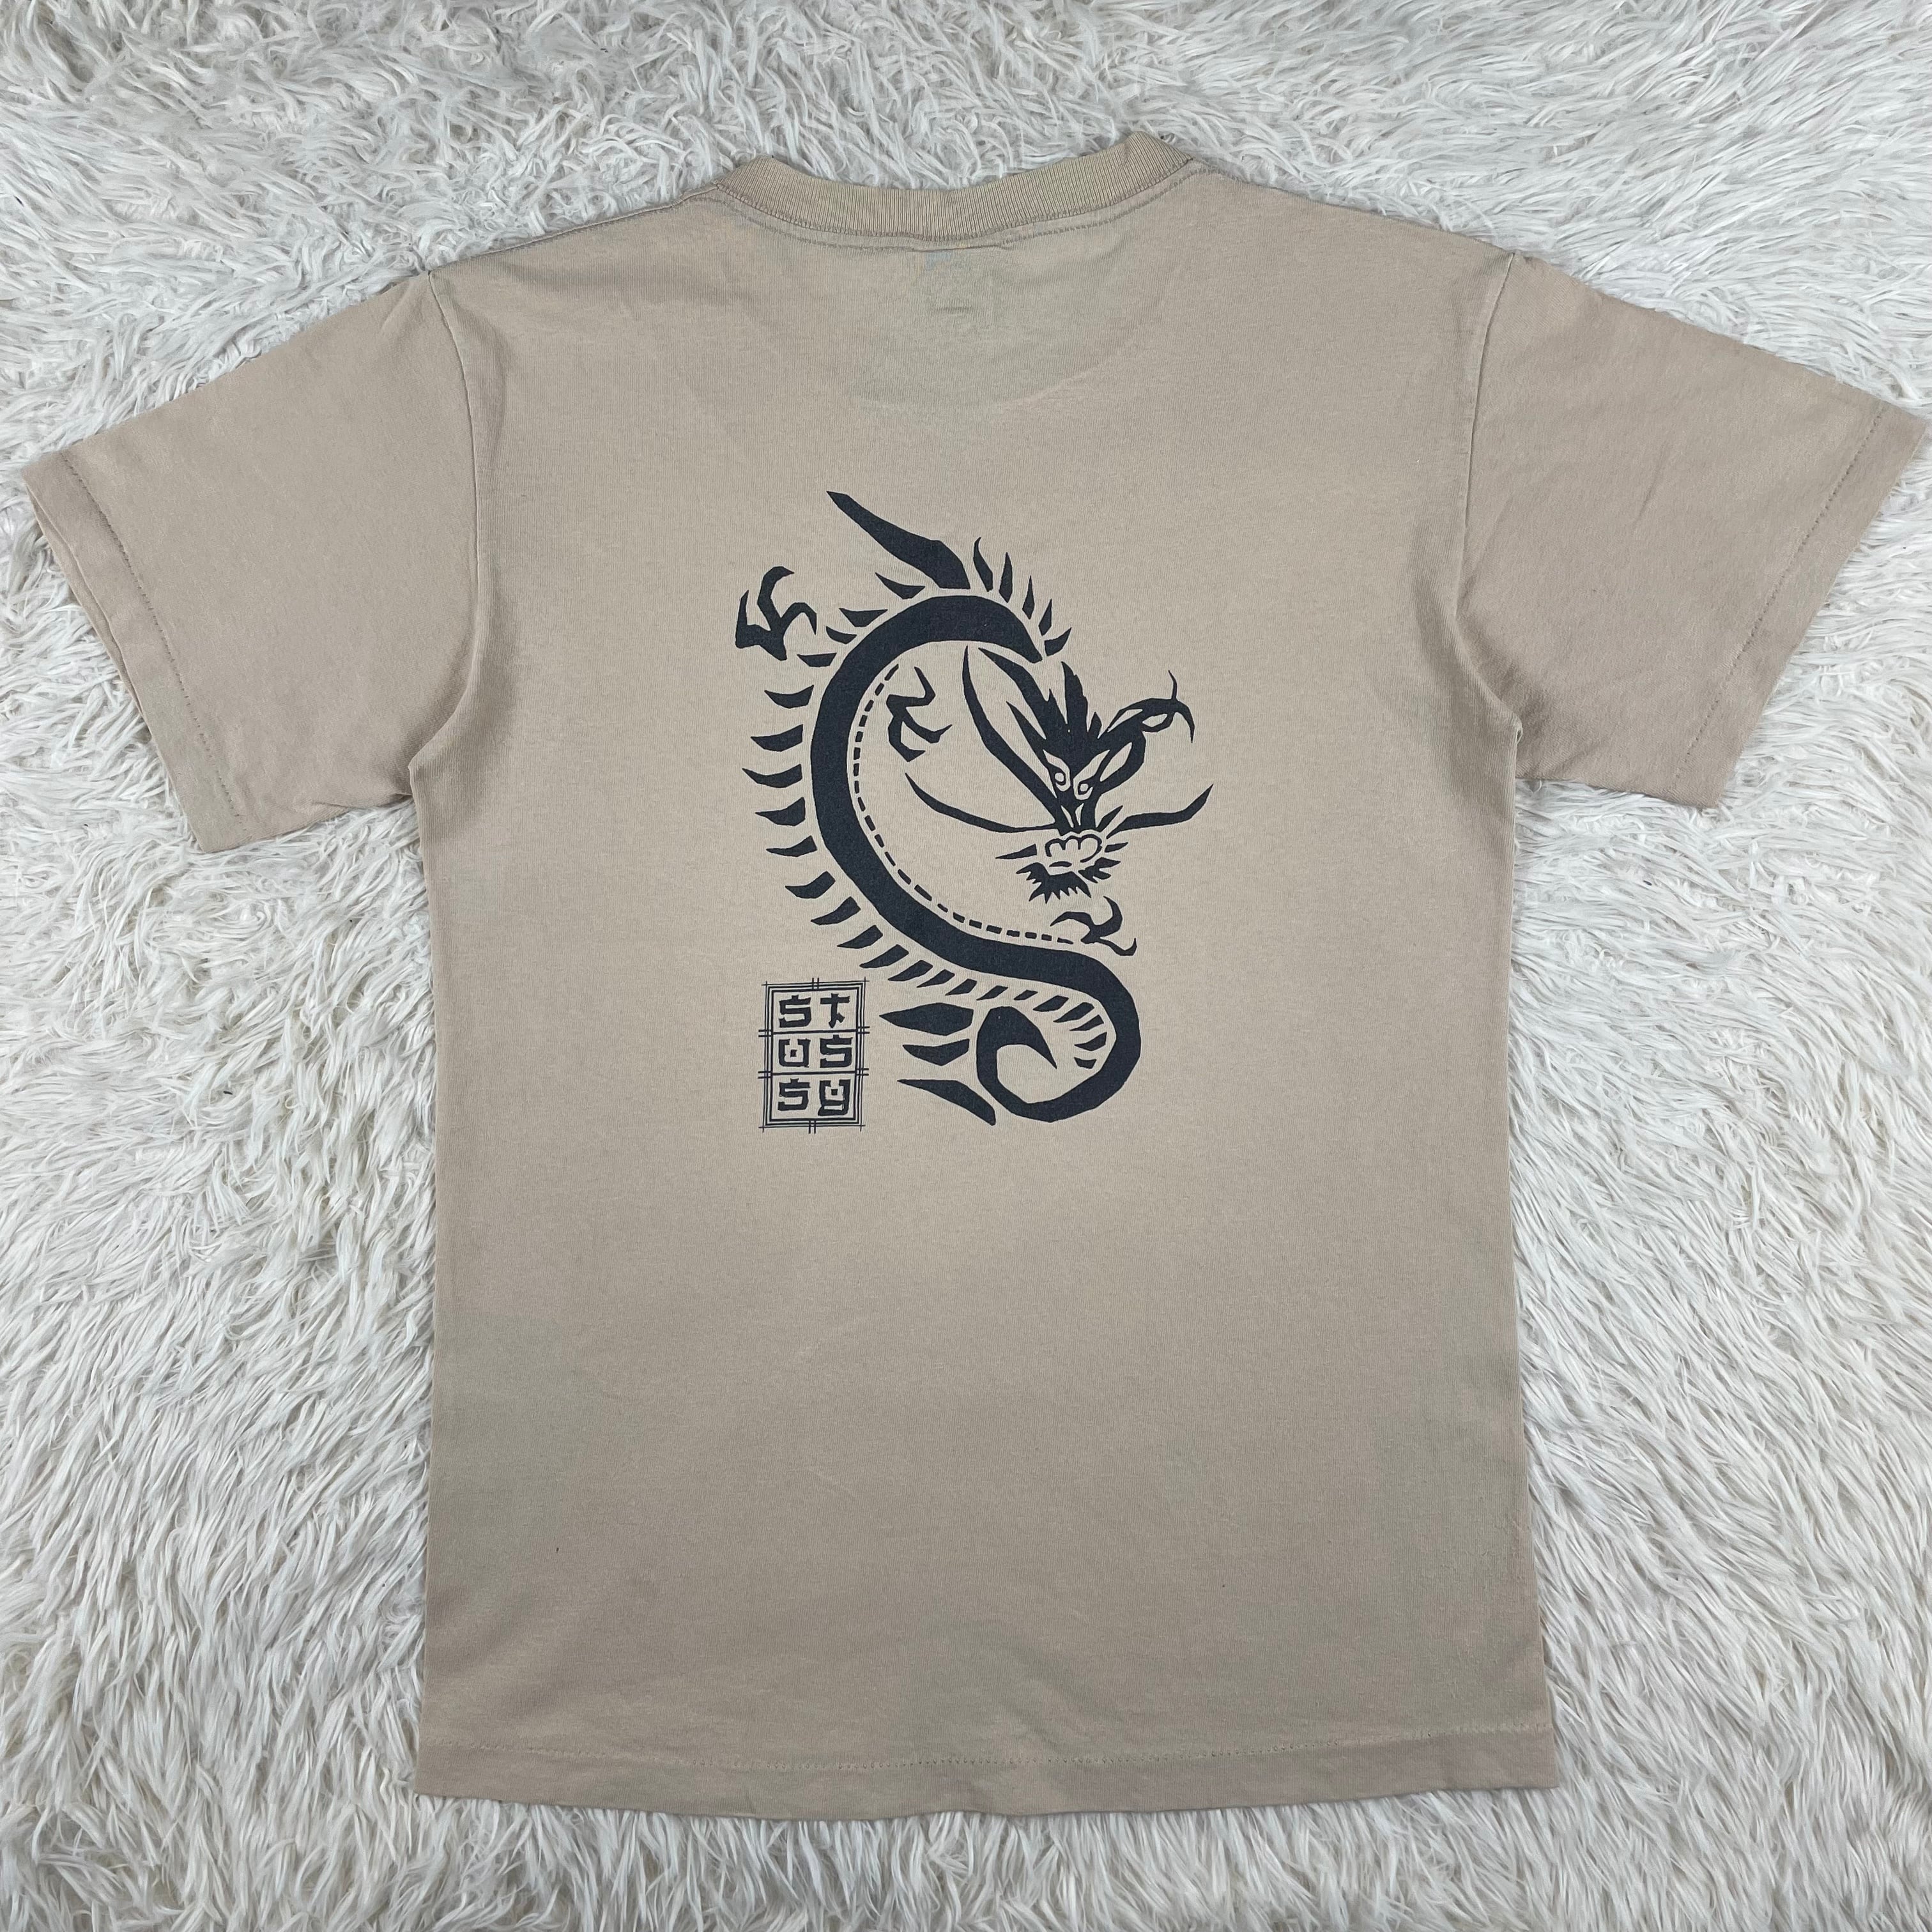 “紺タグ” old stussy ビックロゴ プリント Tシャツ シングル XL